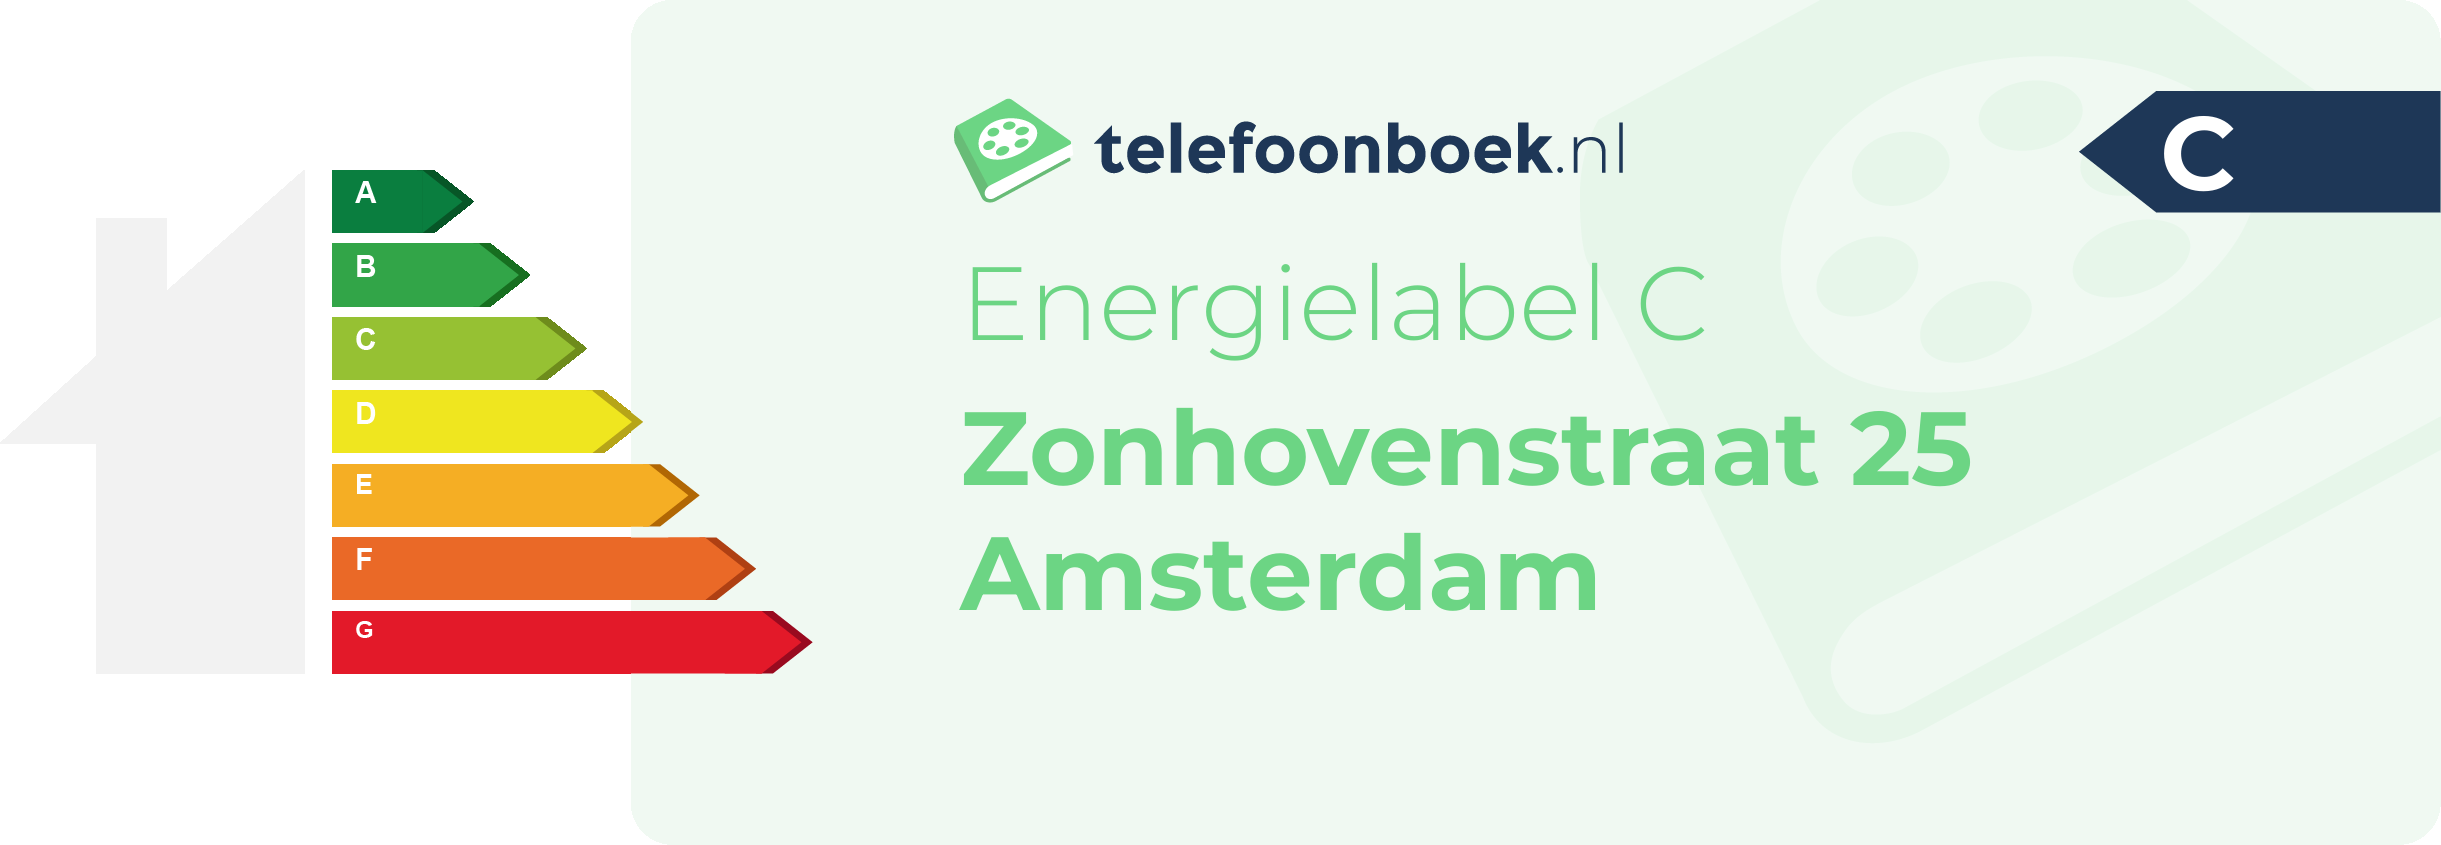 Energielabel Zonhovenstraat 25 Amsterdam